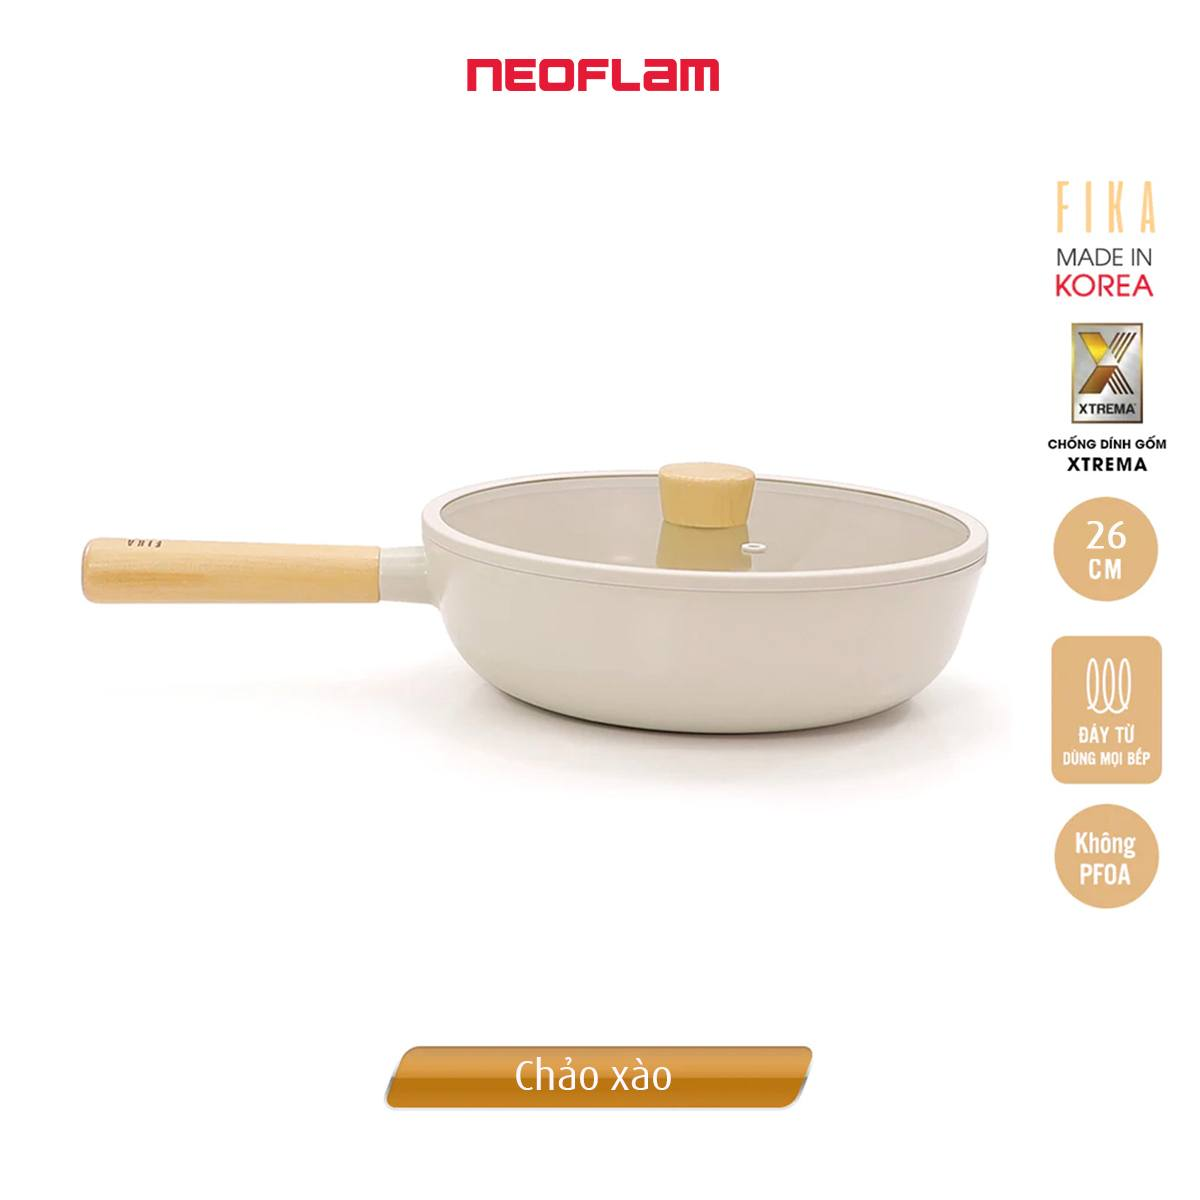 [Hàng chính hãng] Bộ nồi chảo Neoflam Fika 5 món. Made in Korea. Hàng có sẵn, giao ngay